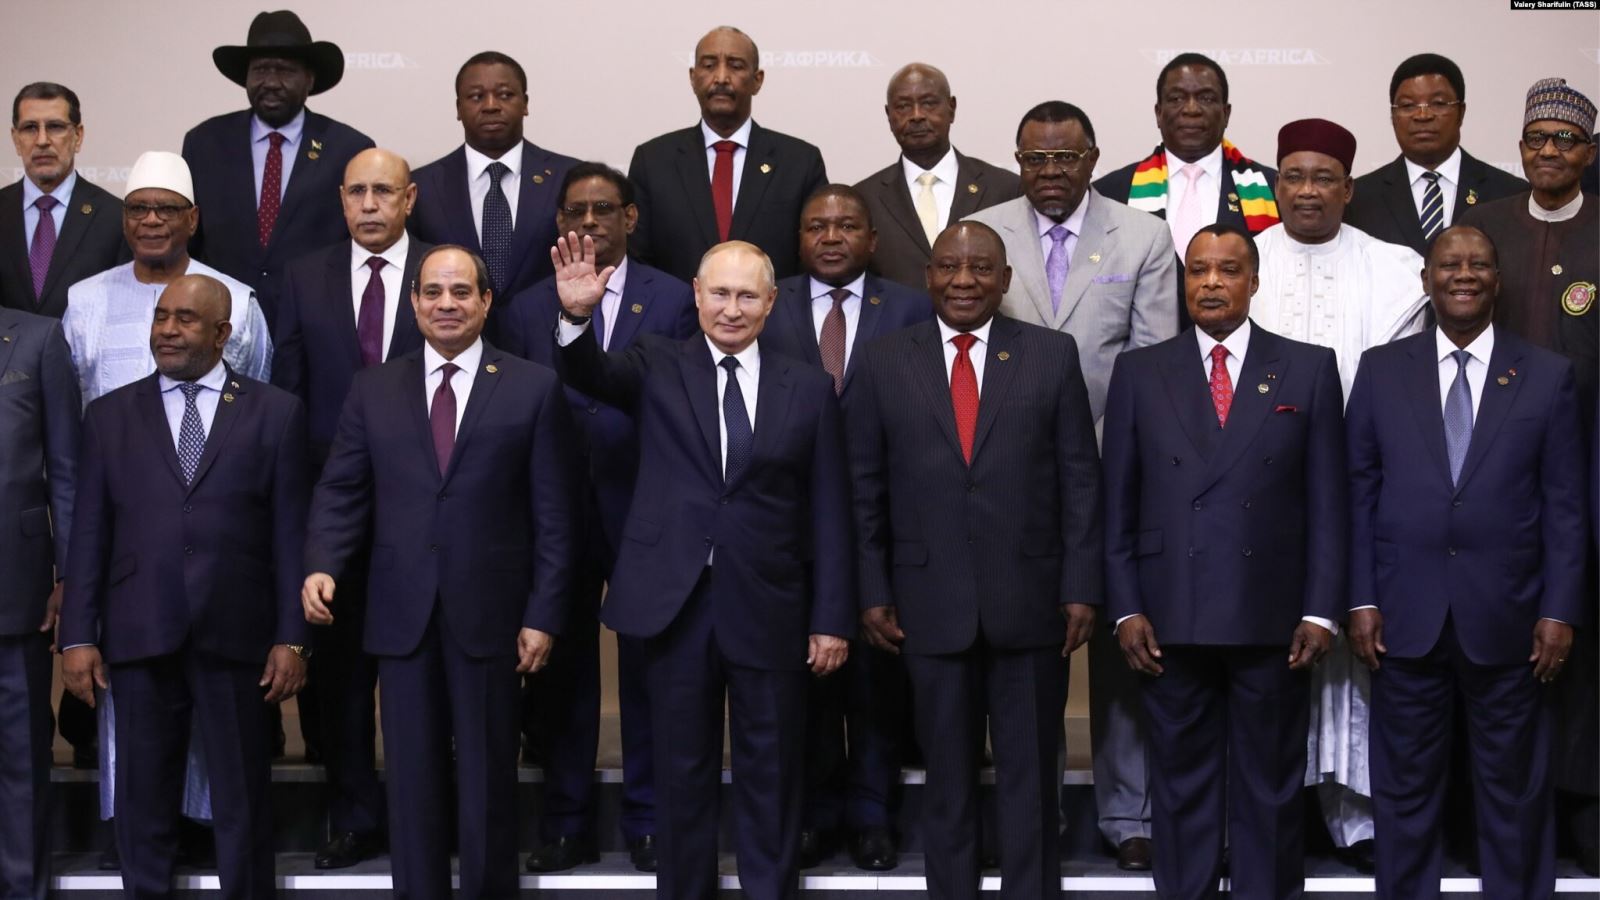 Tổng thống Nga Putin cùng các nhà lãnh đạo châu Phi tại Hội nghị thượng đỉnh Nga-châu Phi ở Sochi vào tháng 10/2019. Ảnh: TASS